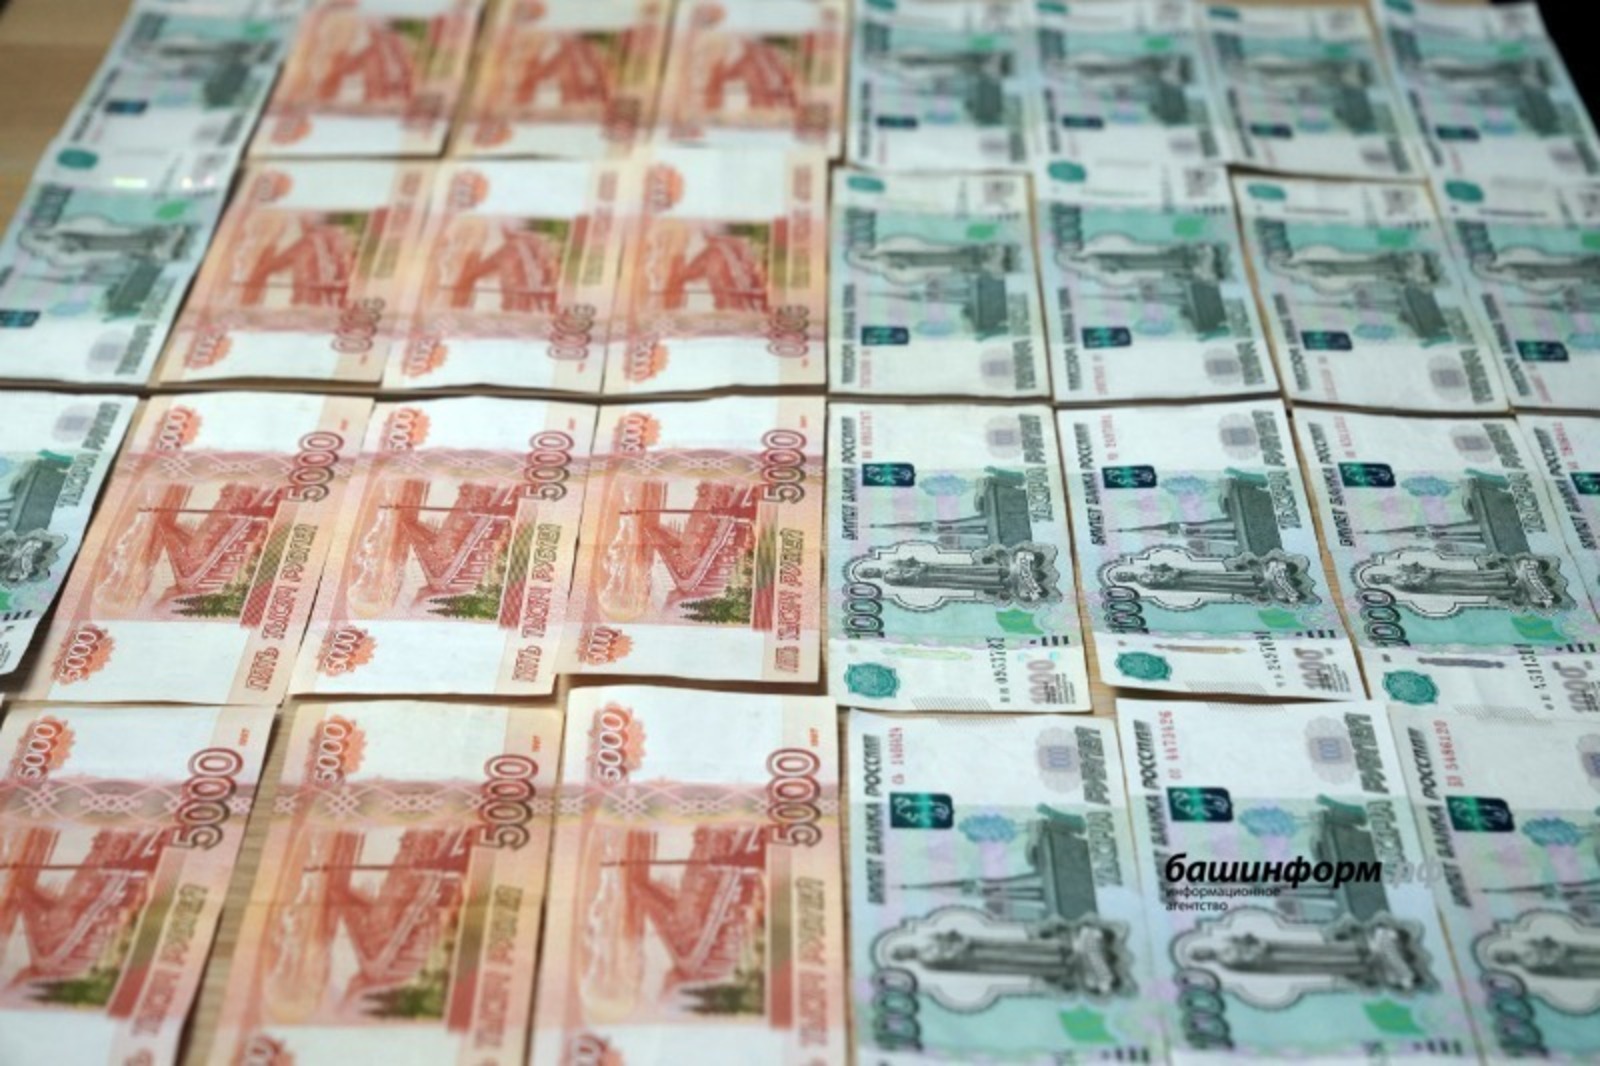 Молодые сельские учителя Башкирии в 2022 году могут получить по 690 тысяч рублей в виде грантов